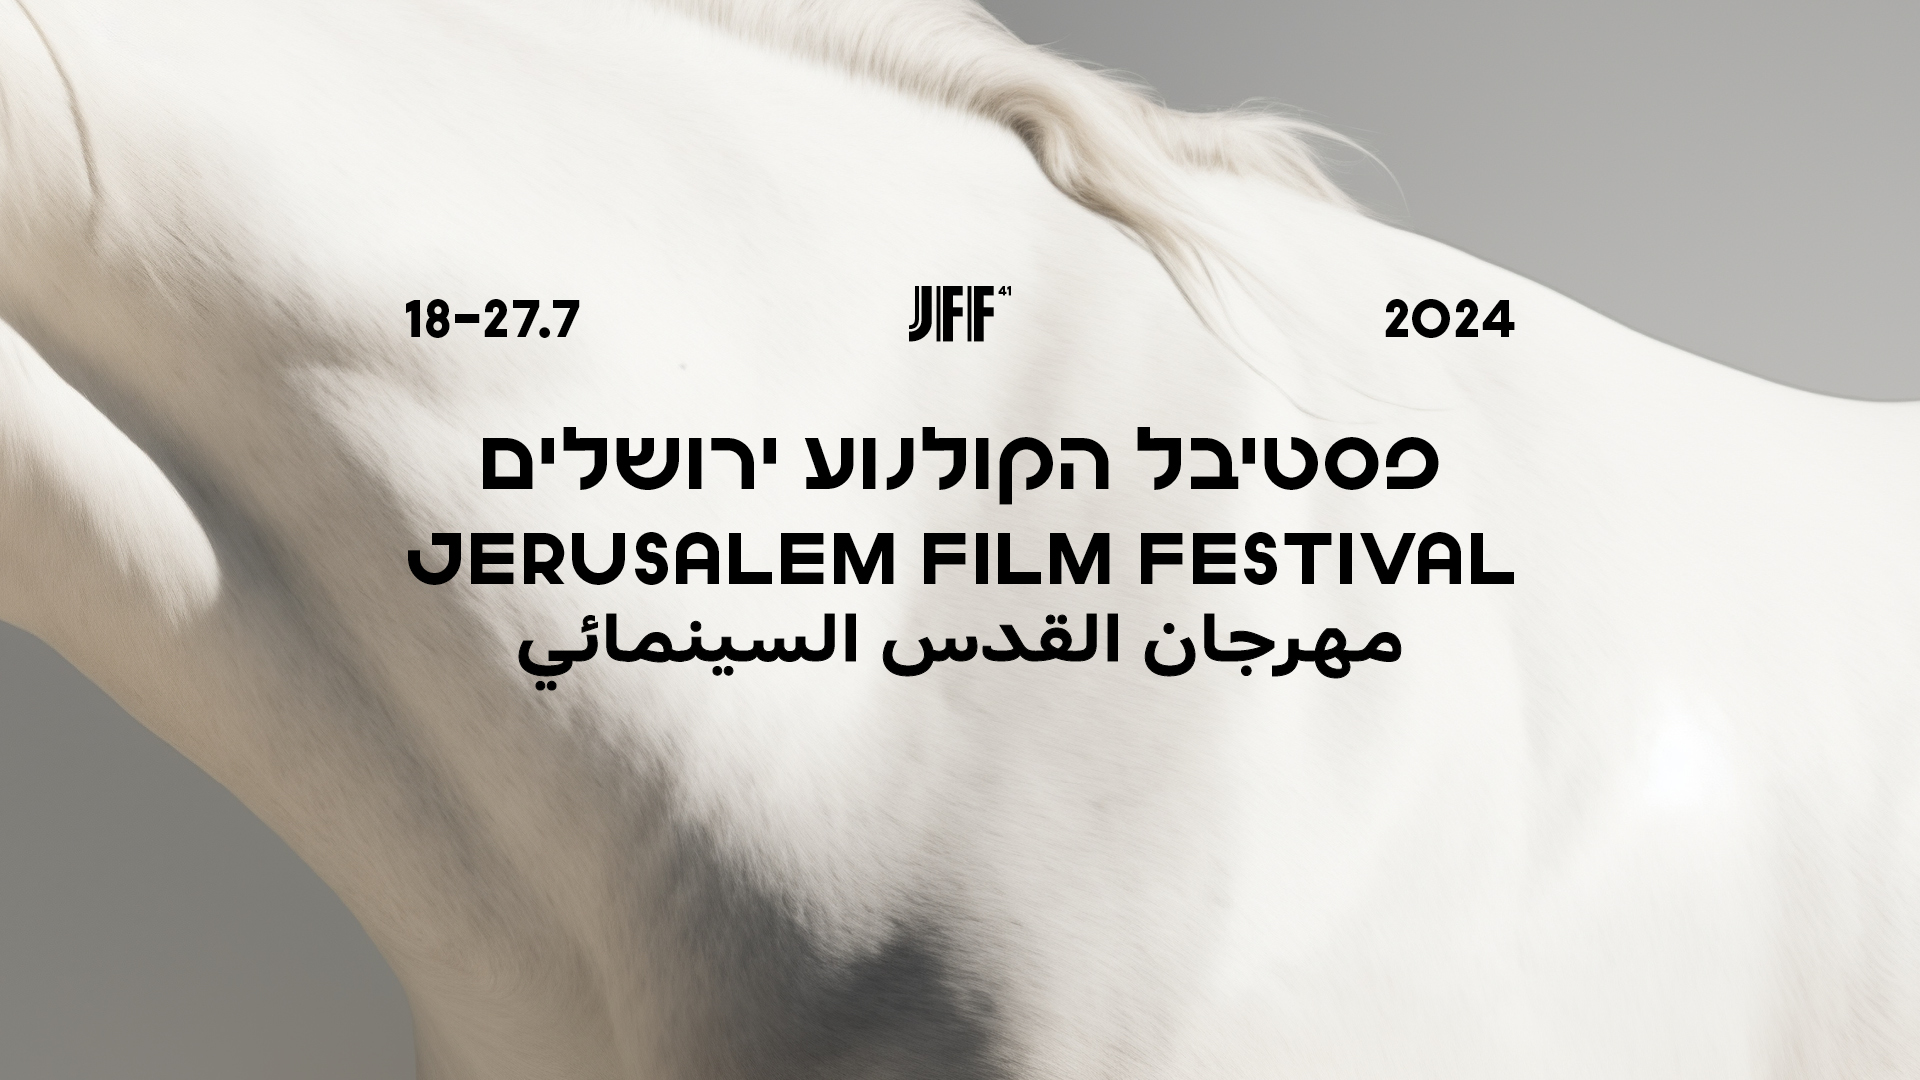 צילום: פסטיבל הקולנוע ירושלים